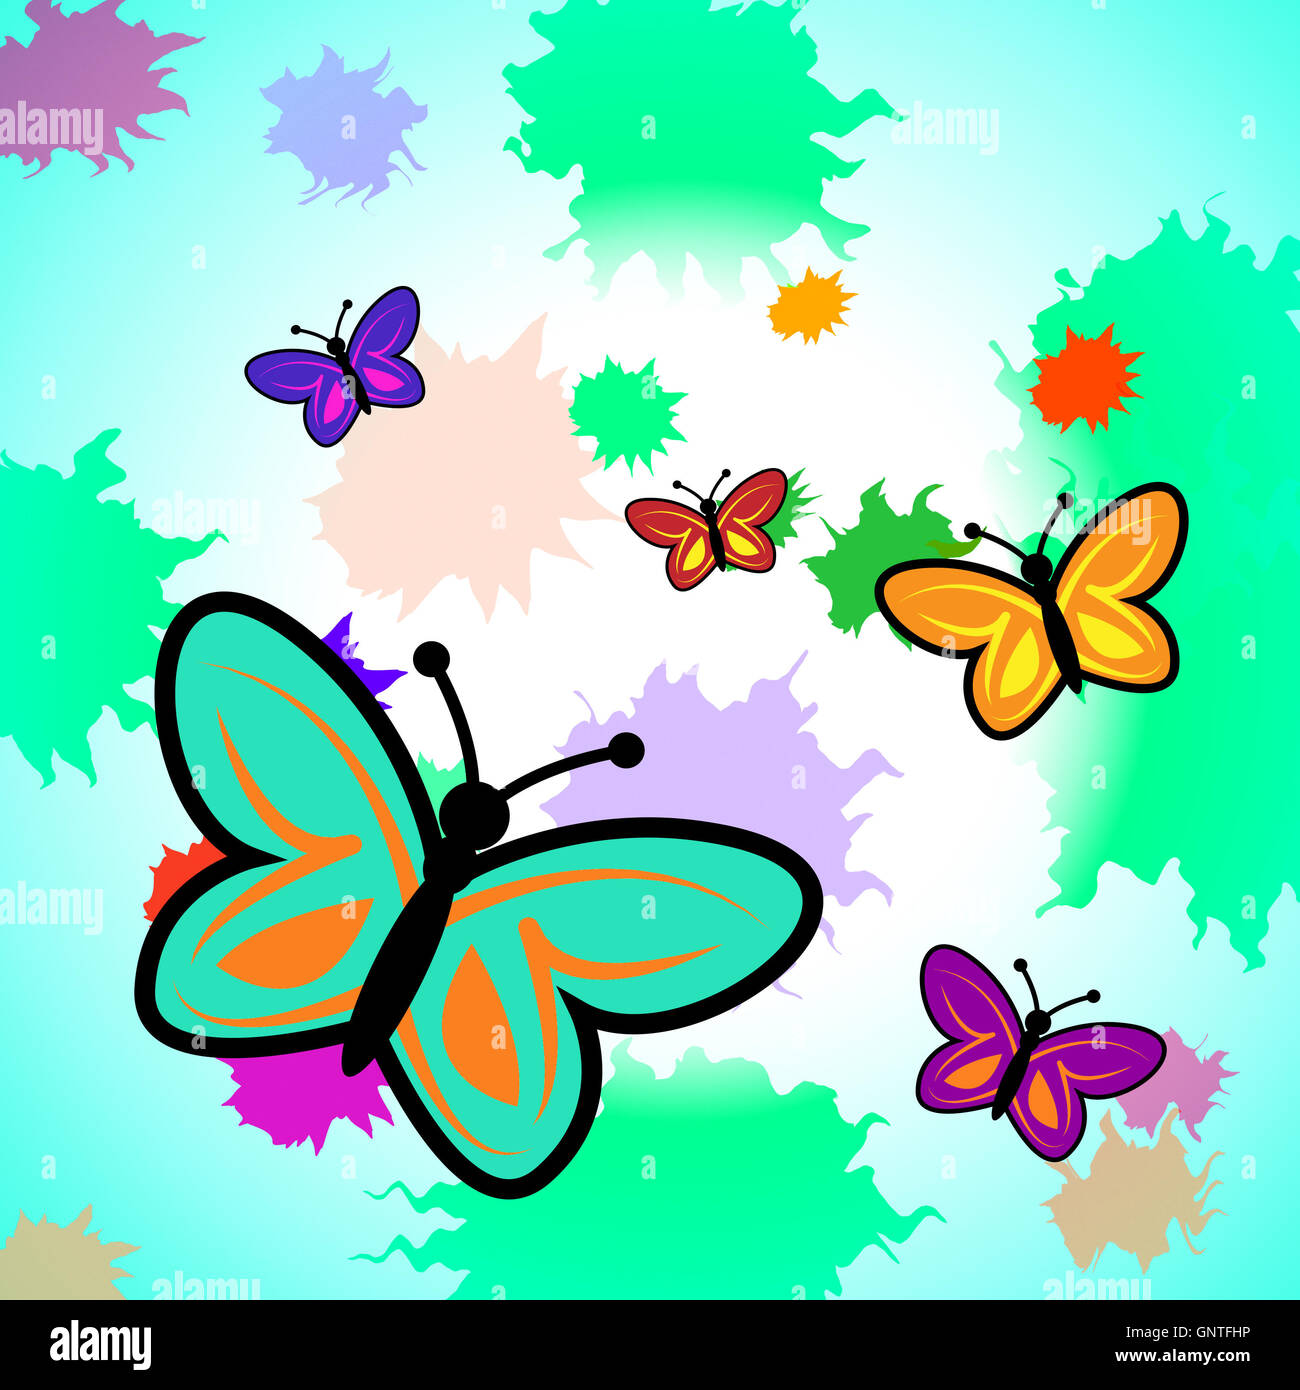 Mariposas coloridas mostrando vibrante y colorida mariposa Foto de stock